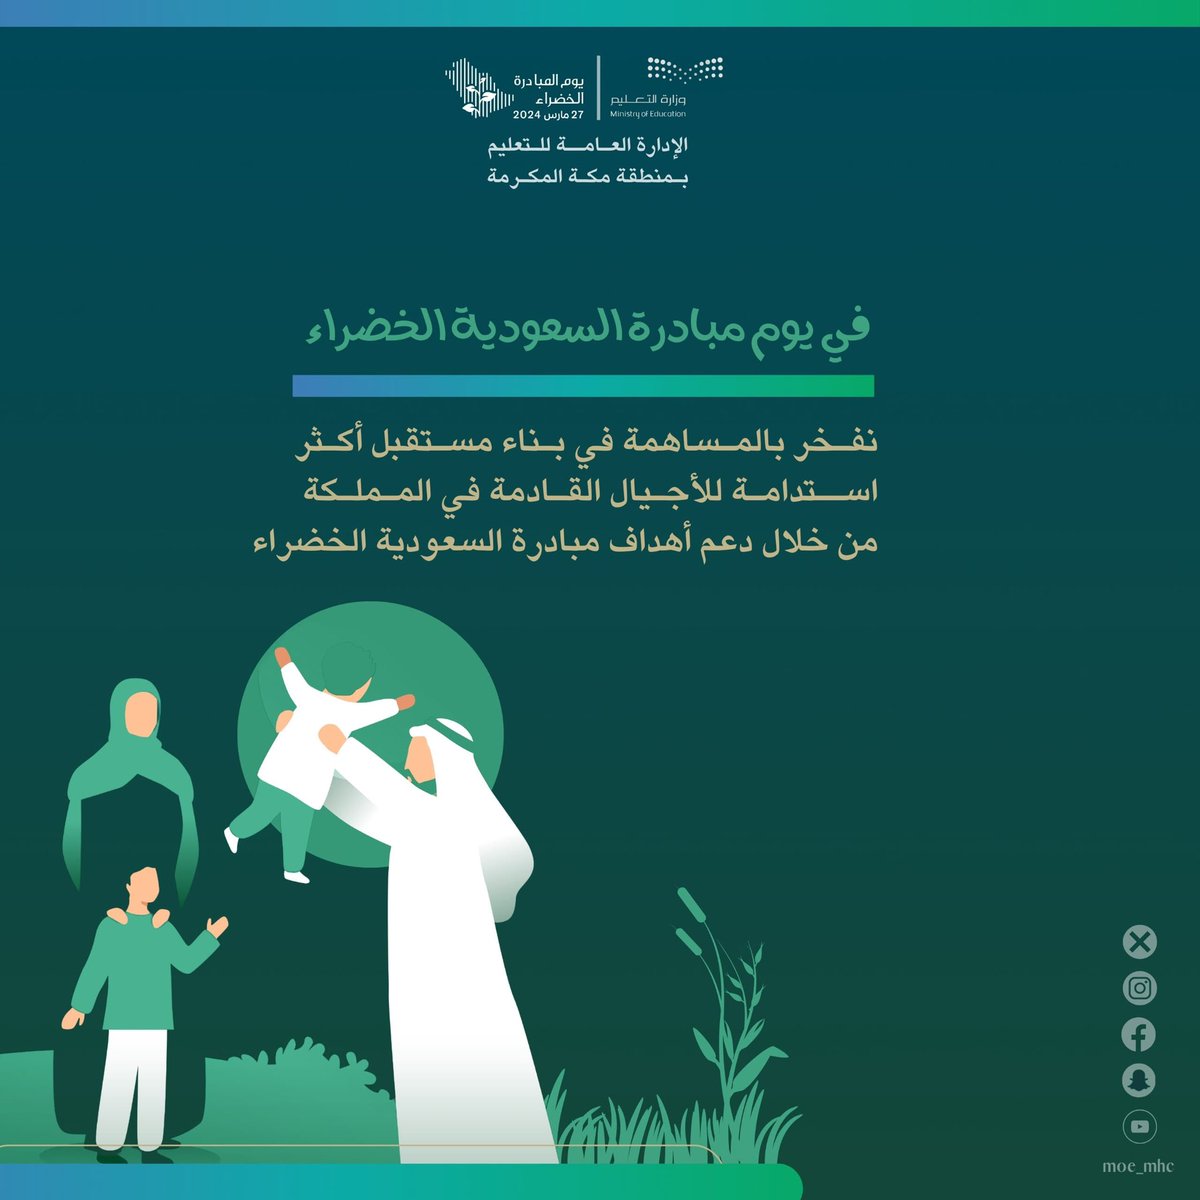 نفـخر بالمـساهمة في بـناء مسـتقبل أكـثر
اســتدامـة للأجـيال القـادمة في المـملـكة
من خلال دعم أهداف #مبادرة_السعودية_الخضراء

#تعليم_مكة 
#لمستقبل_ أكثر_استدامة
#ForAGreenerSaudi